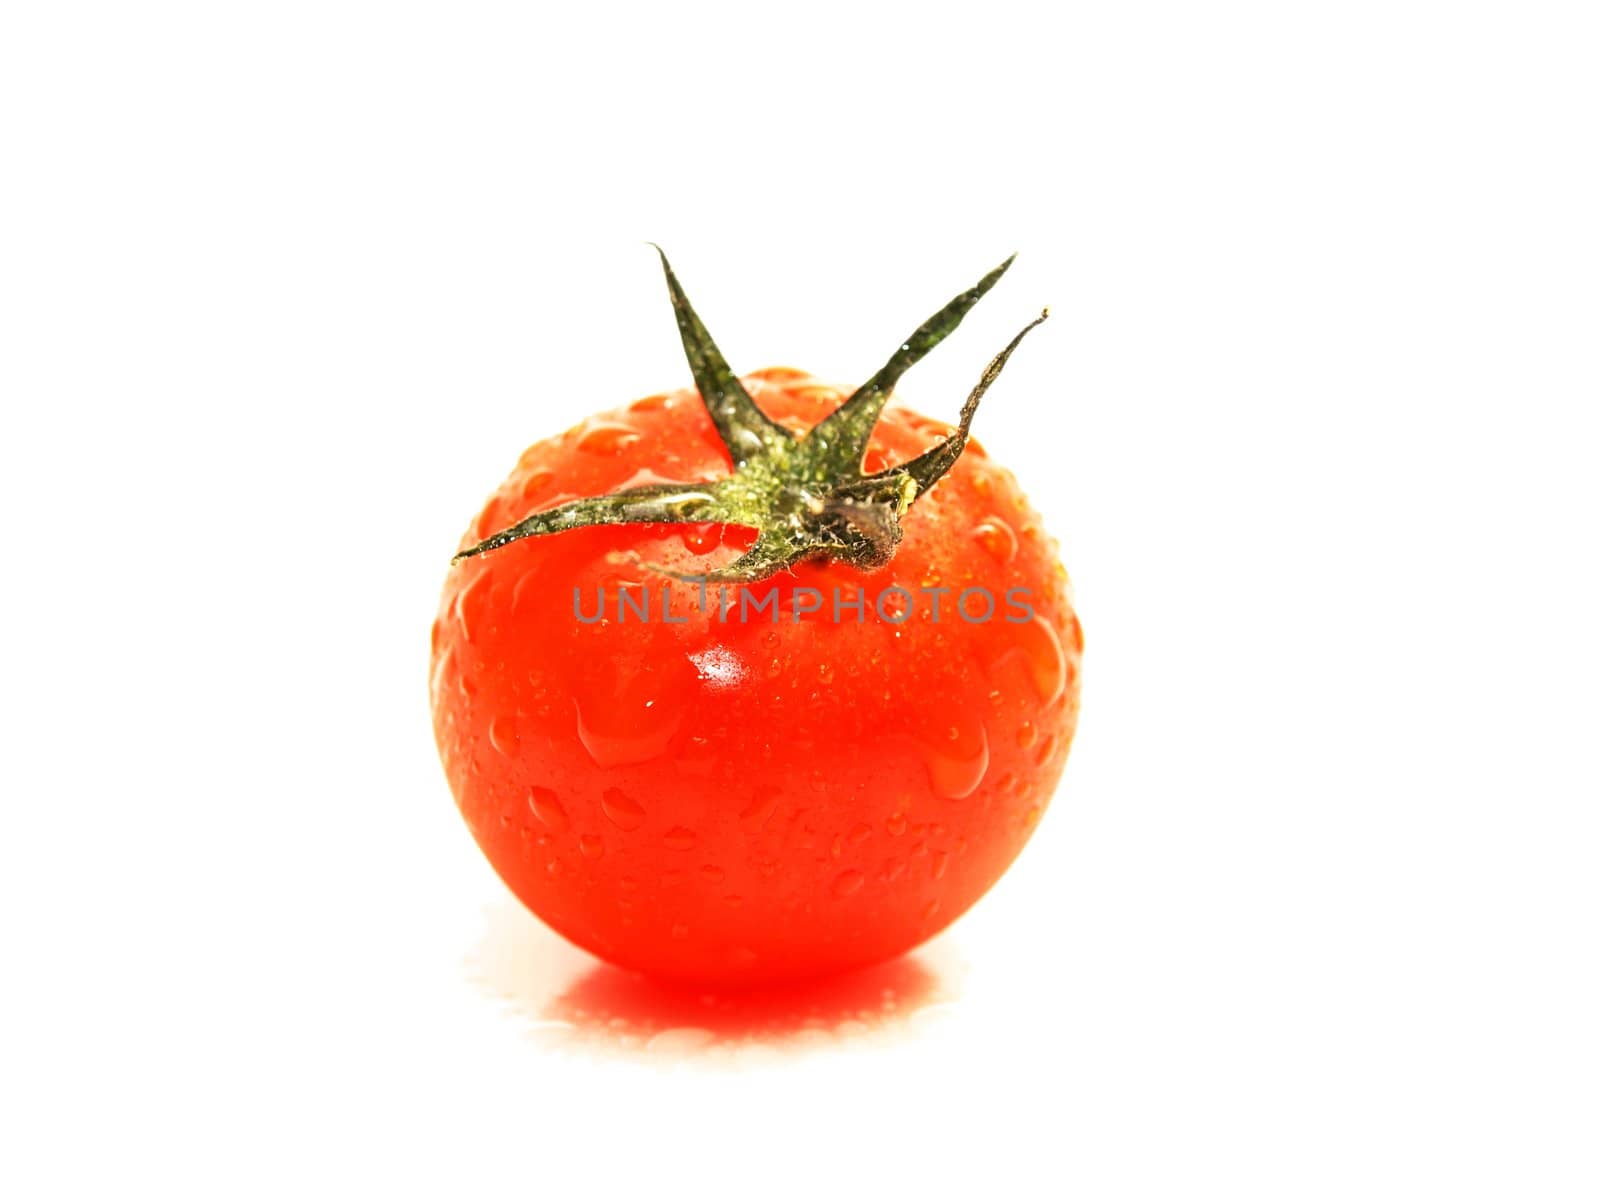 Tomato by Arvebettum